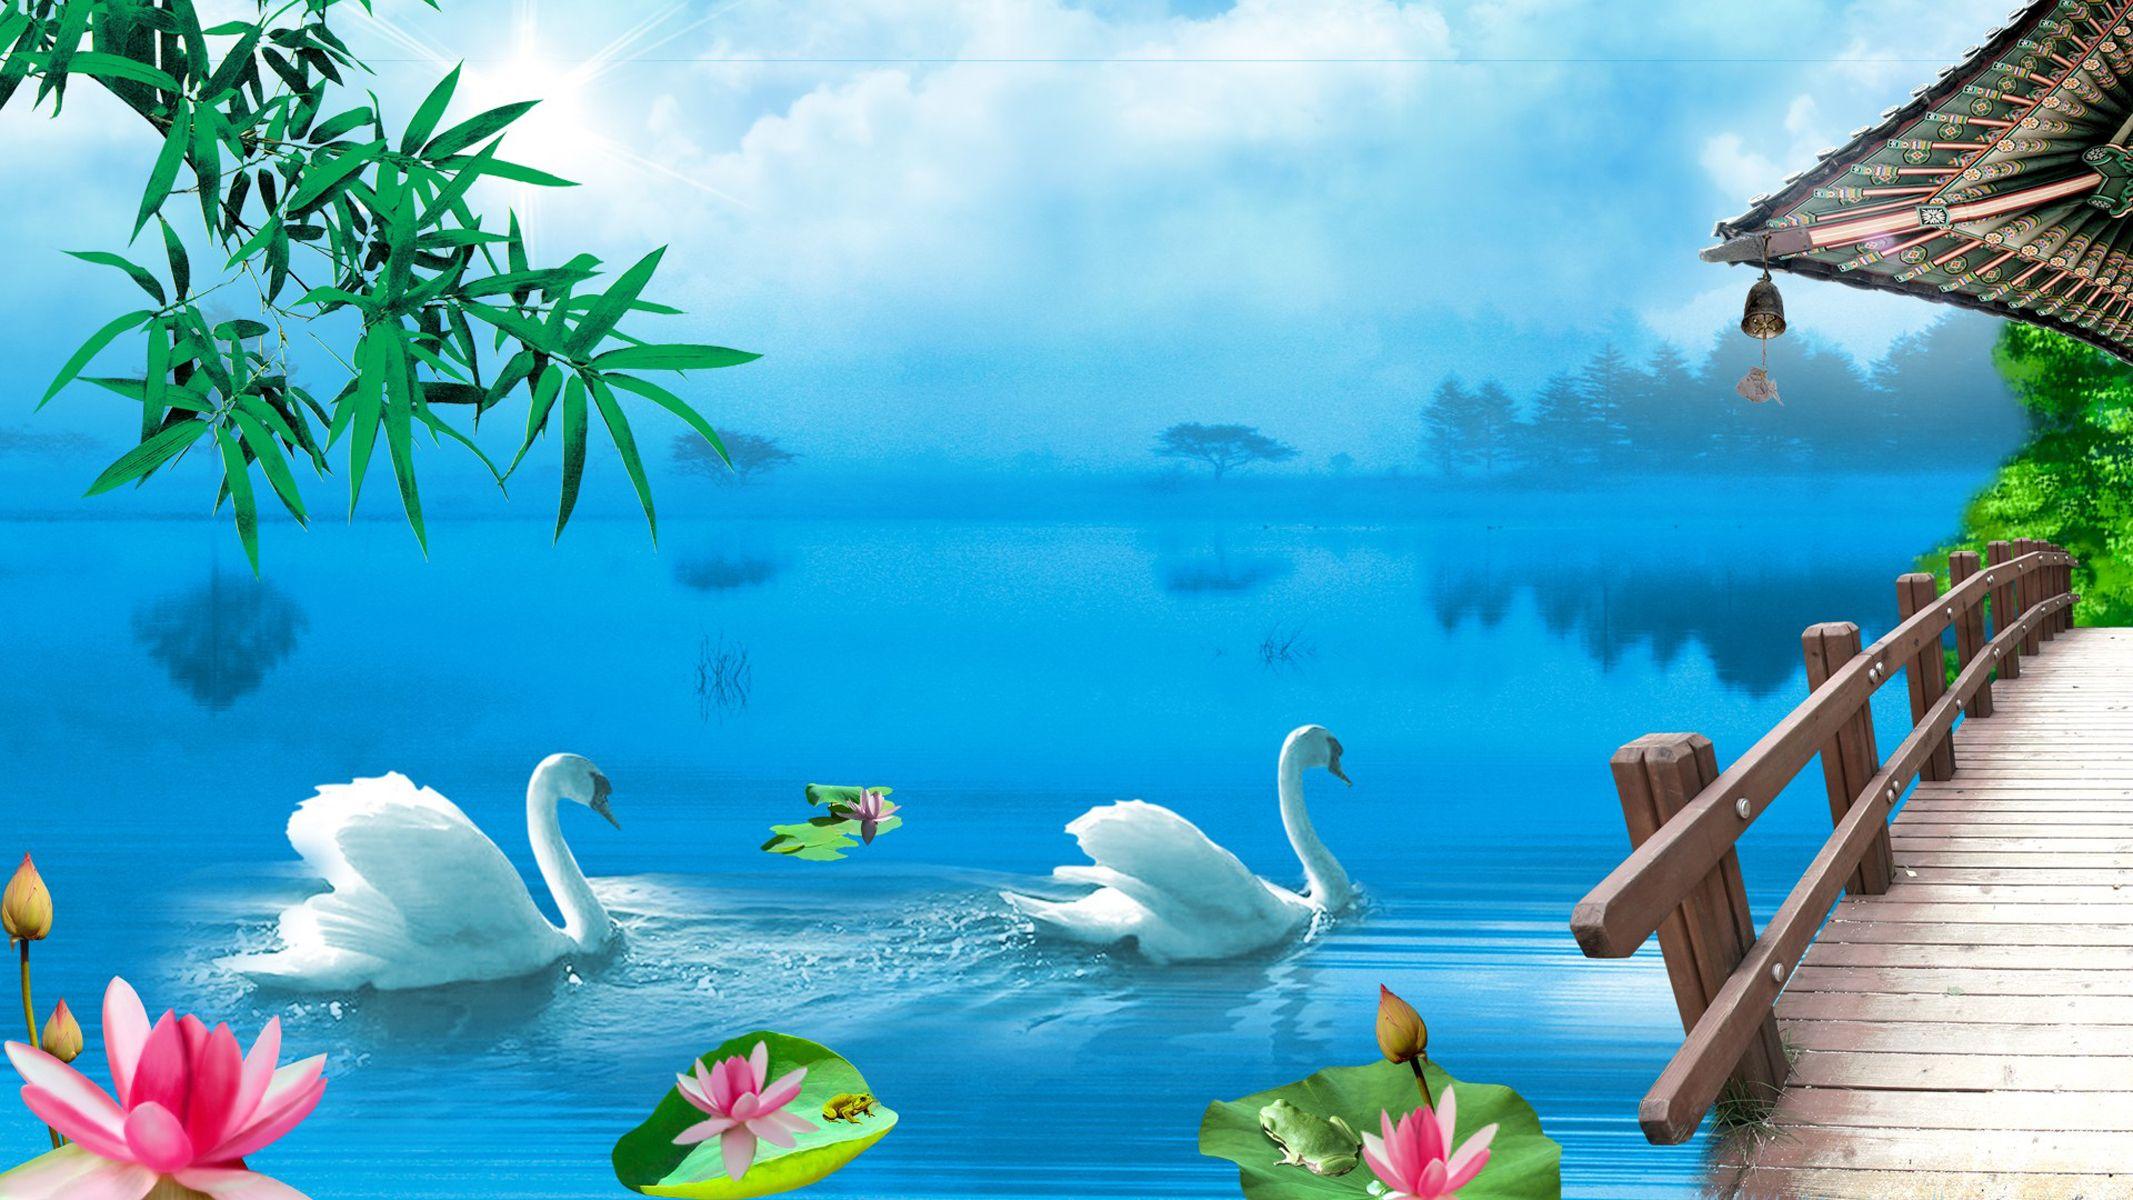 Swan Lake Wallpaper For Desktop, Wallpaper13.com